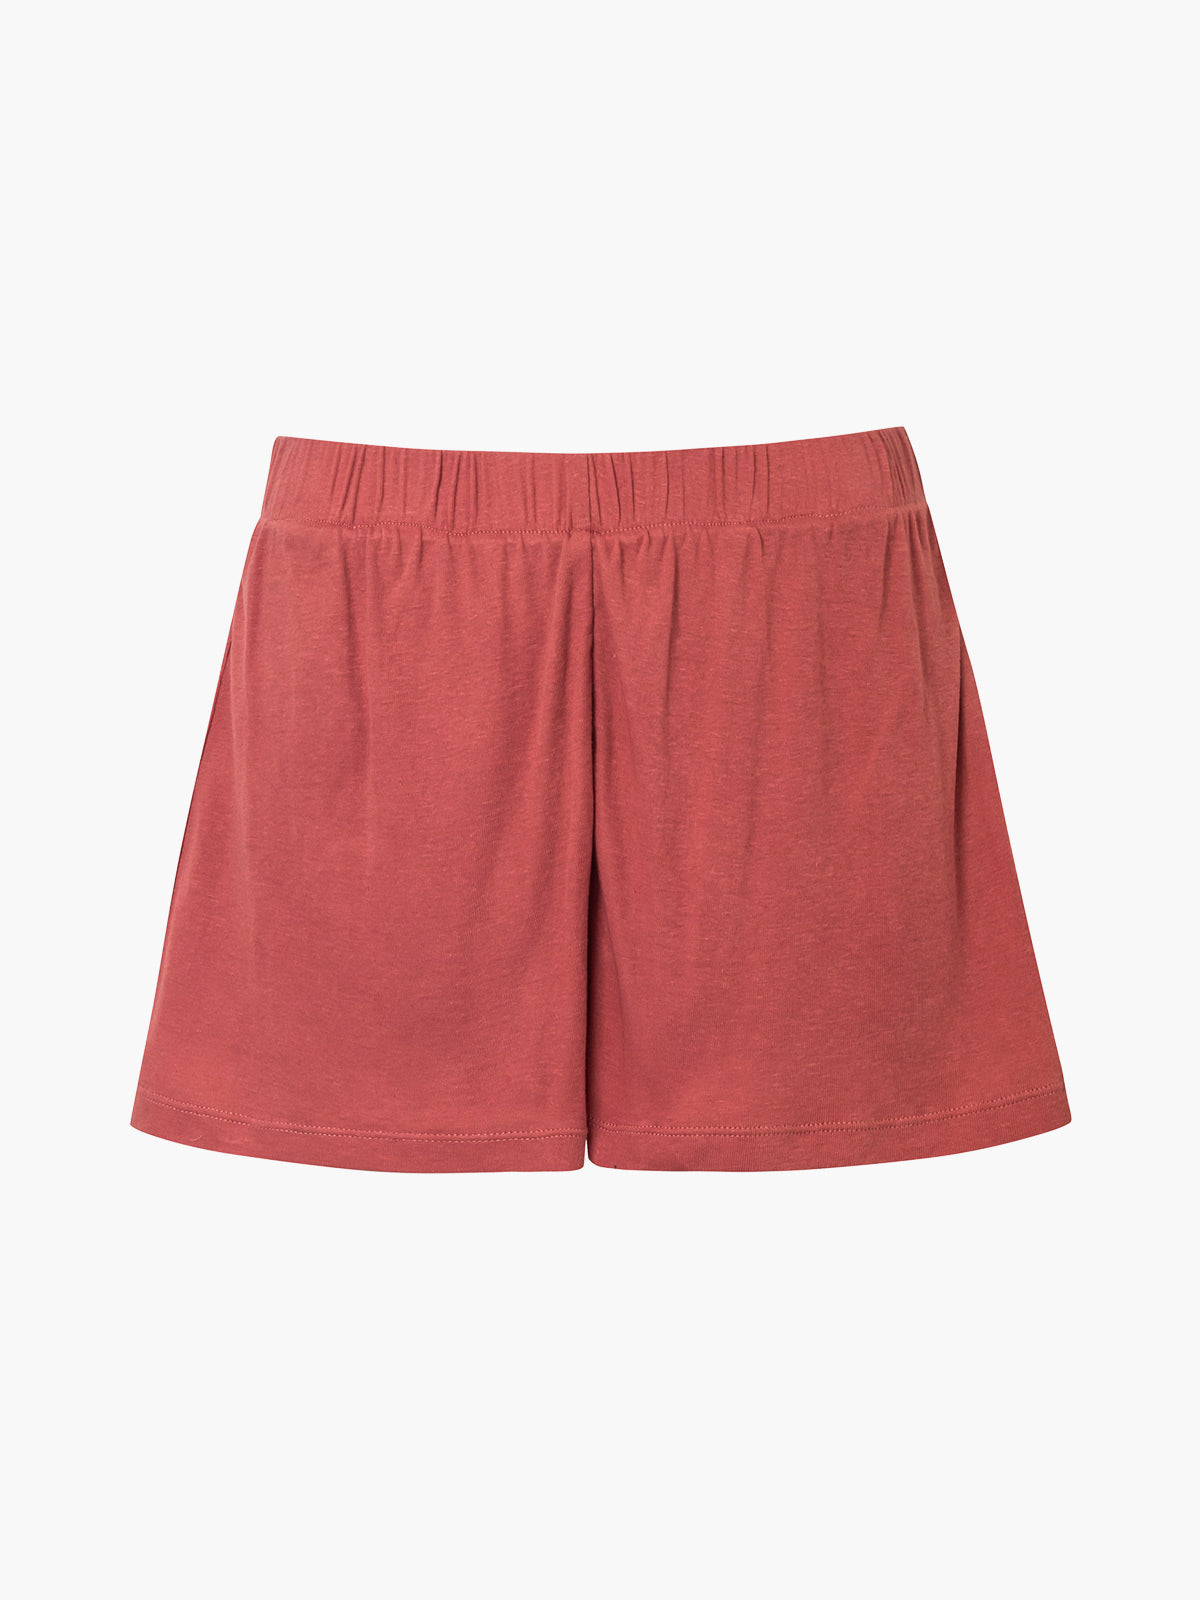 Orsay Boxer Shorts | Brick Orsay Boxer Shorts | Brick